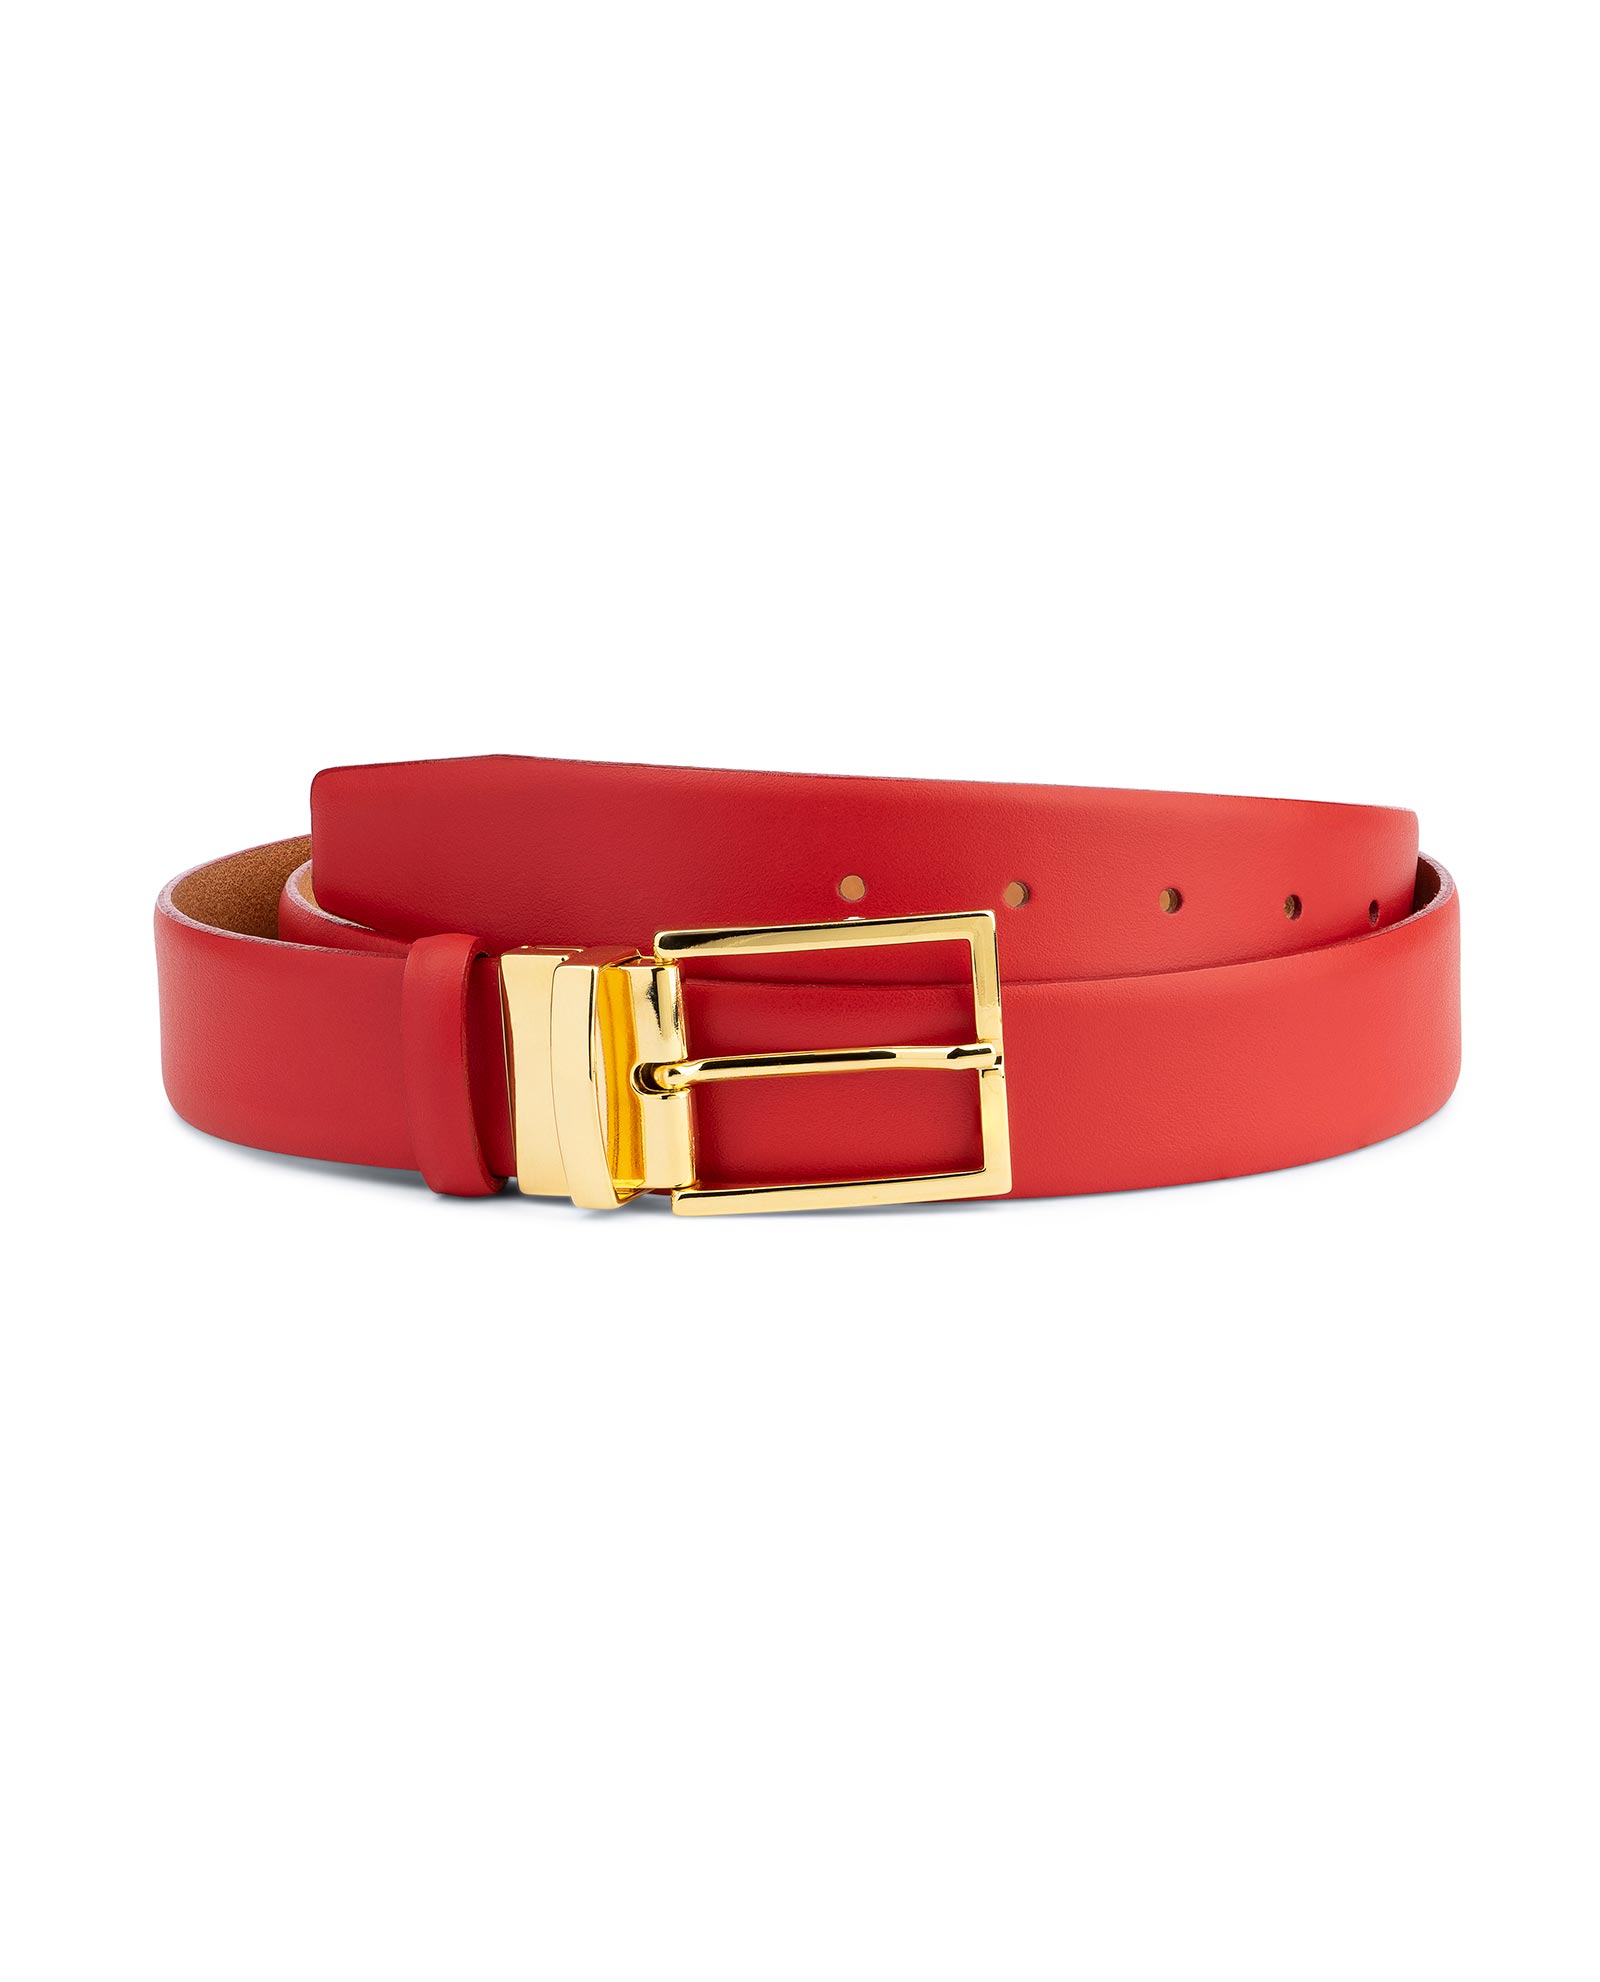 OSTRICH Pattern RED Color BONDED Leather Men's Belt Gold-Tone Buckle Regular 